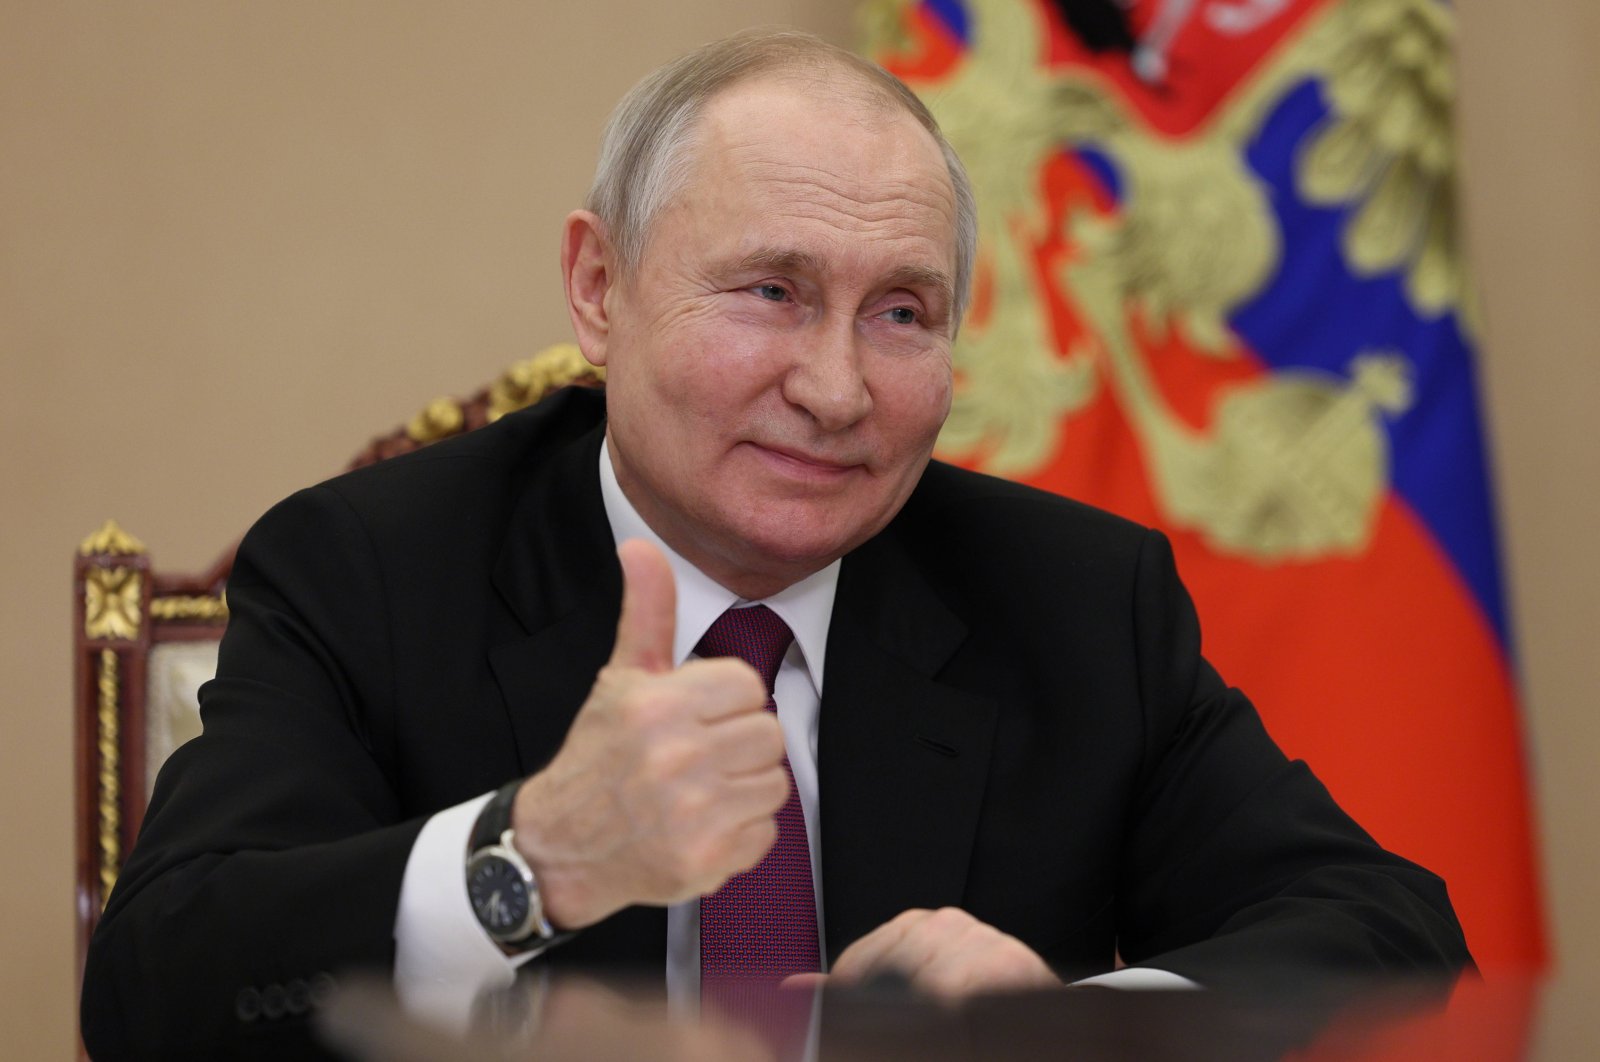 Putin receives BRICS summit invitation despite int'l arrest warrant